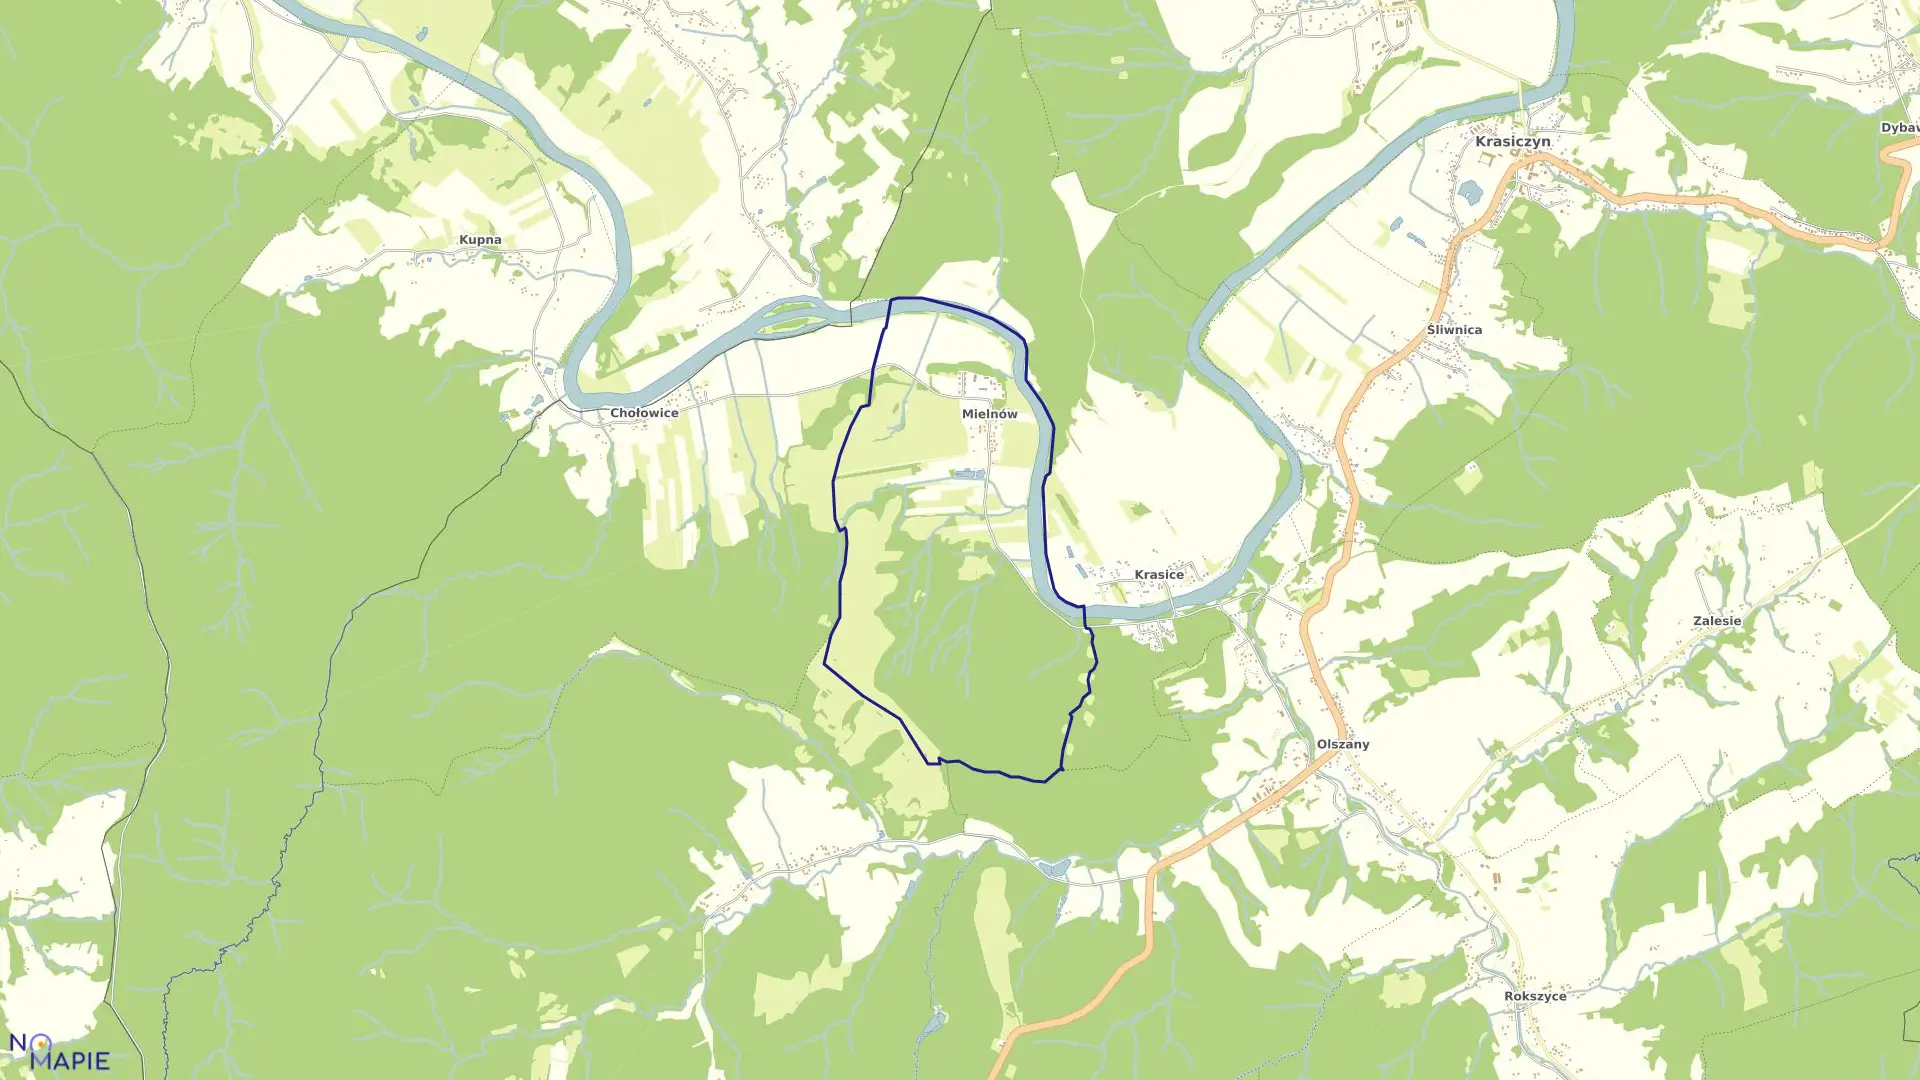 Mapa obrębu Mielnów w gminie Krasiczyn